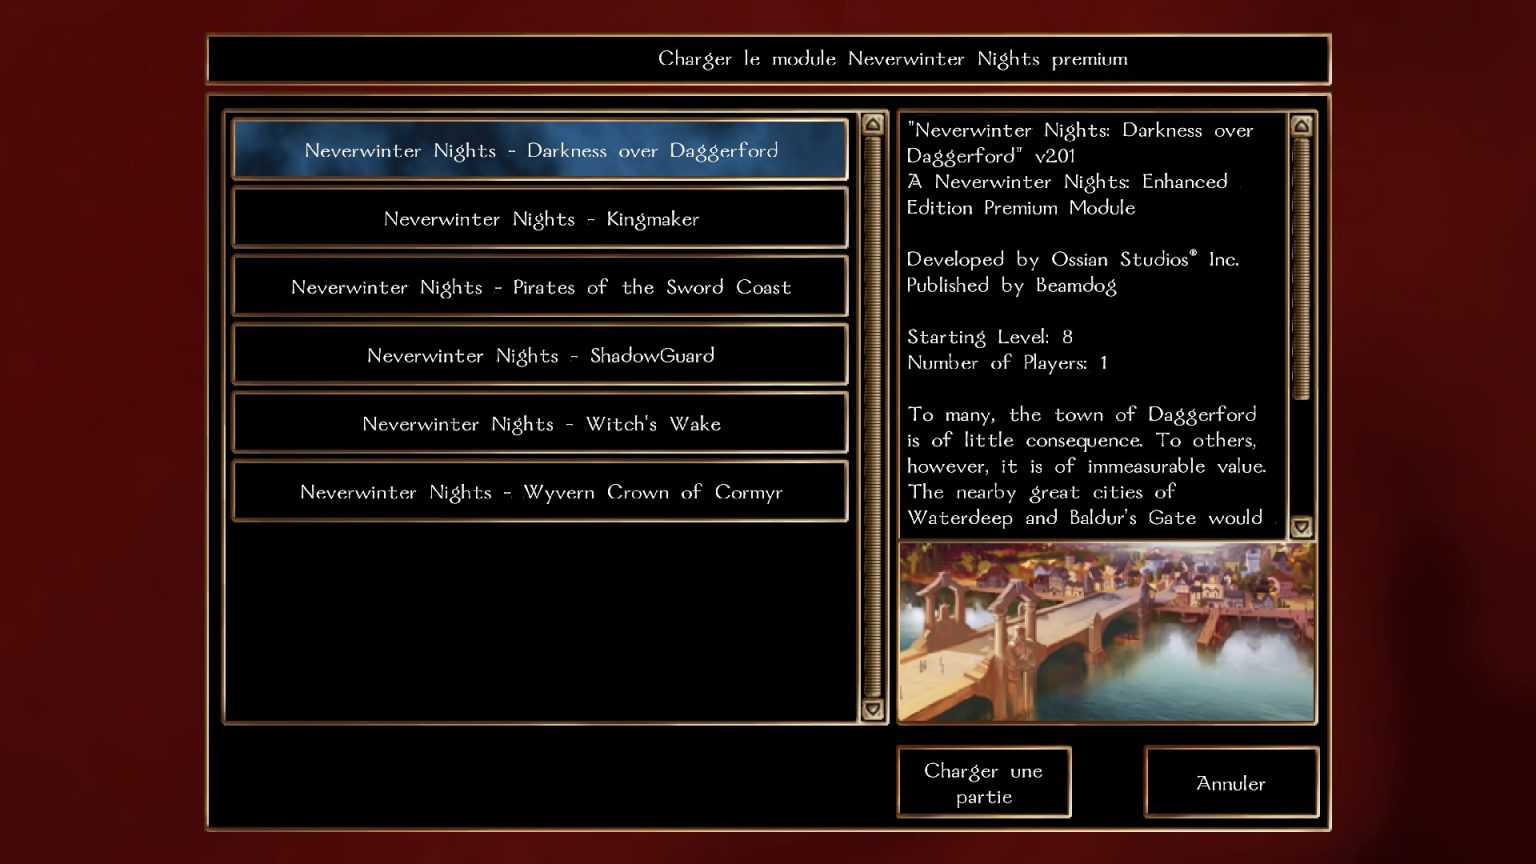 neverwinter nights enhanced edition windowed mode